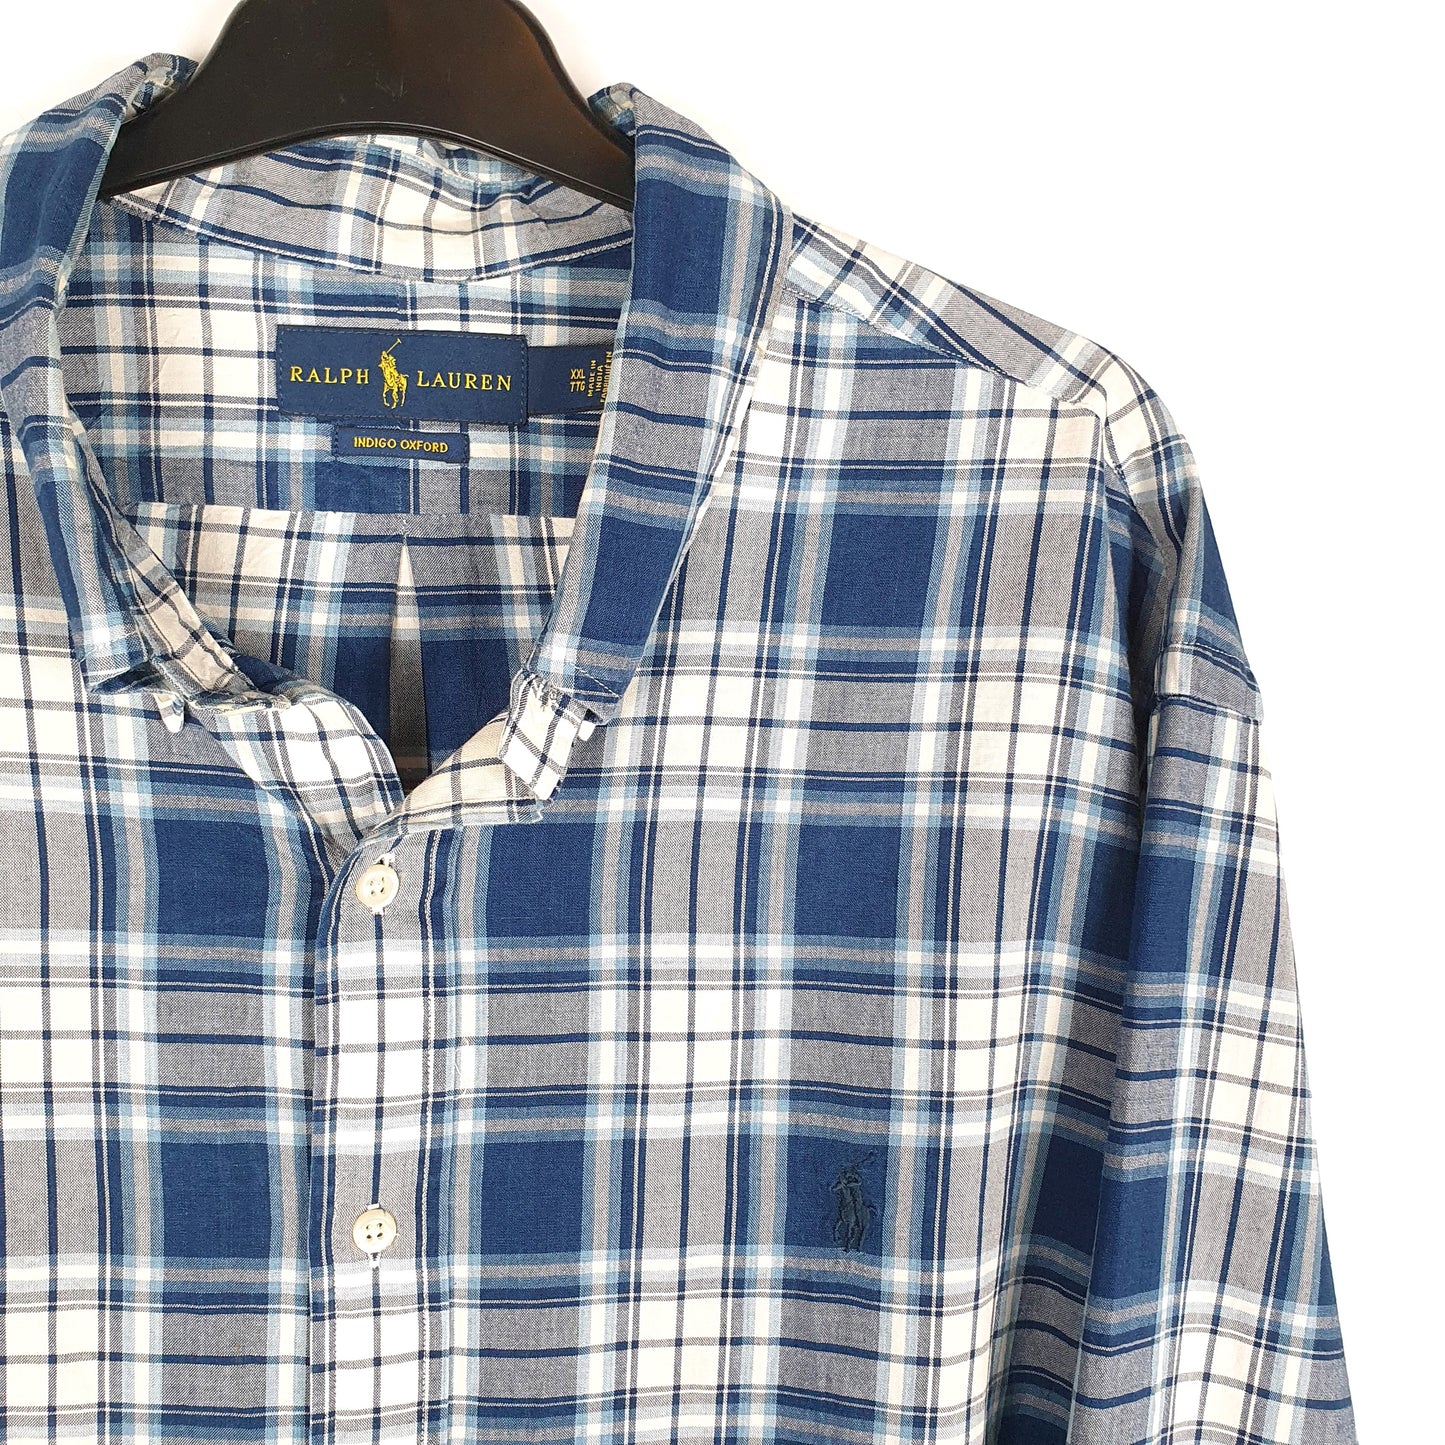 Polo Ralph Lauren Long Sleeve Regular Fit Check Shirt